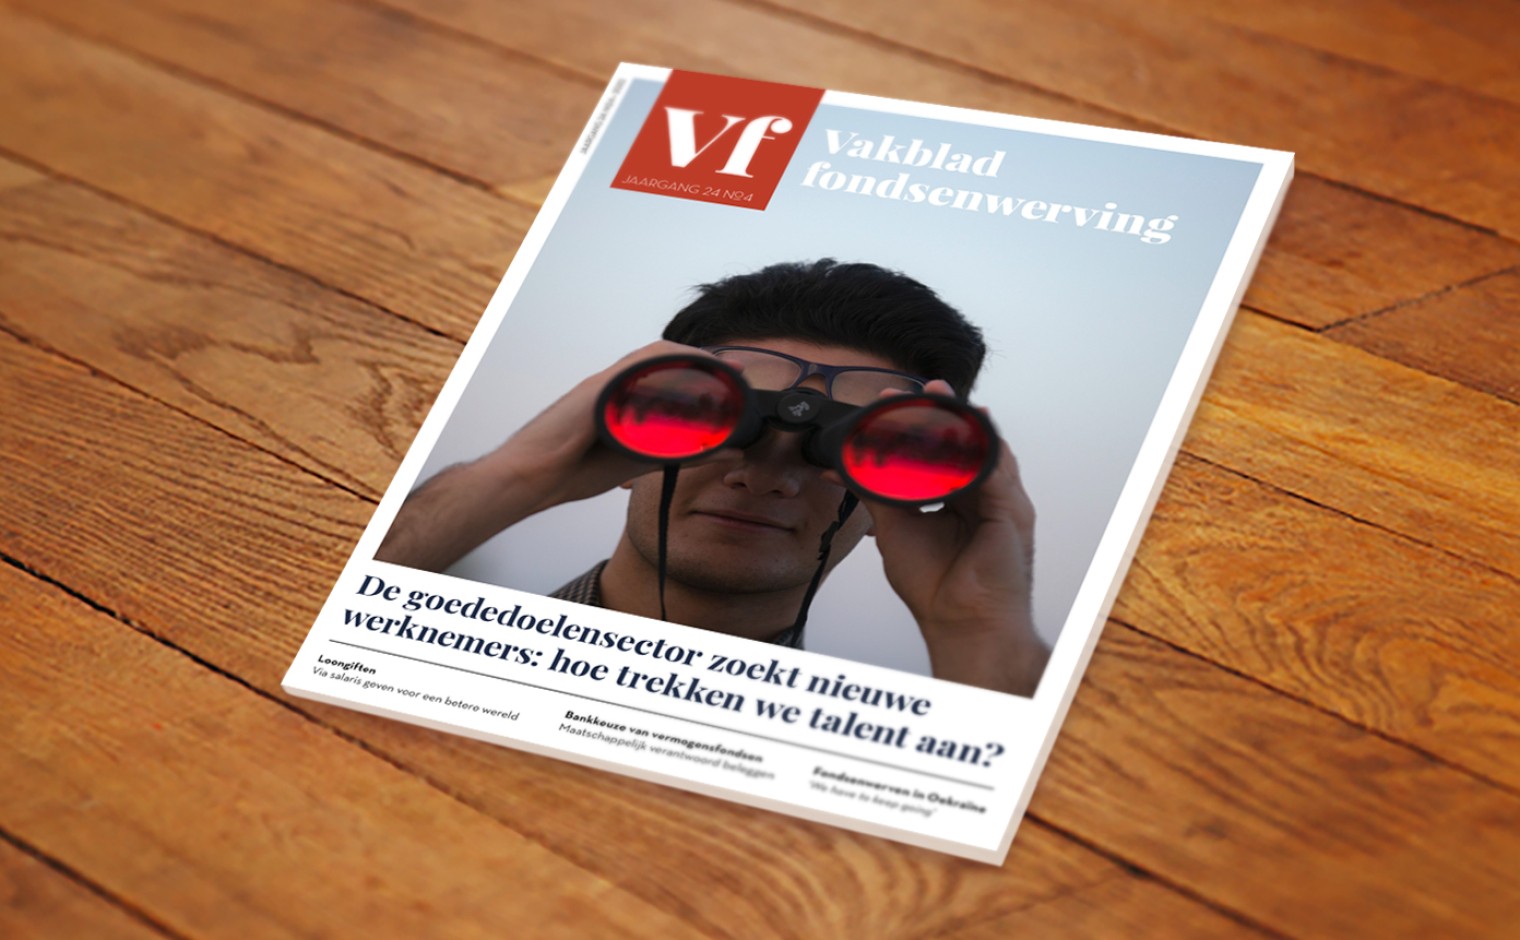 De cover van Vakblad fondsenwerving jaargang 24, nummer 4, dat op 27 september 2022 verschijnt.